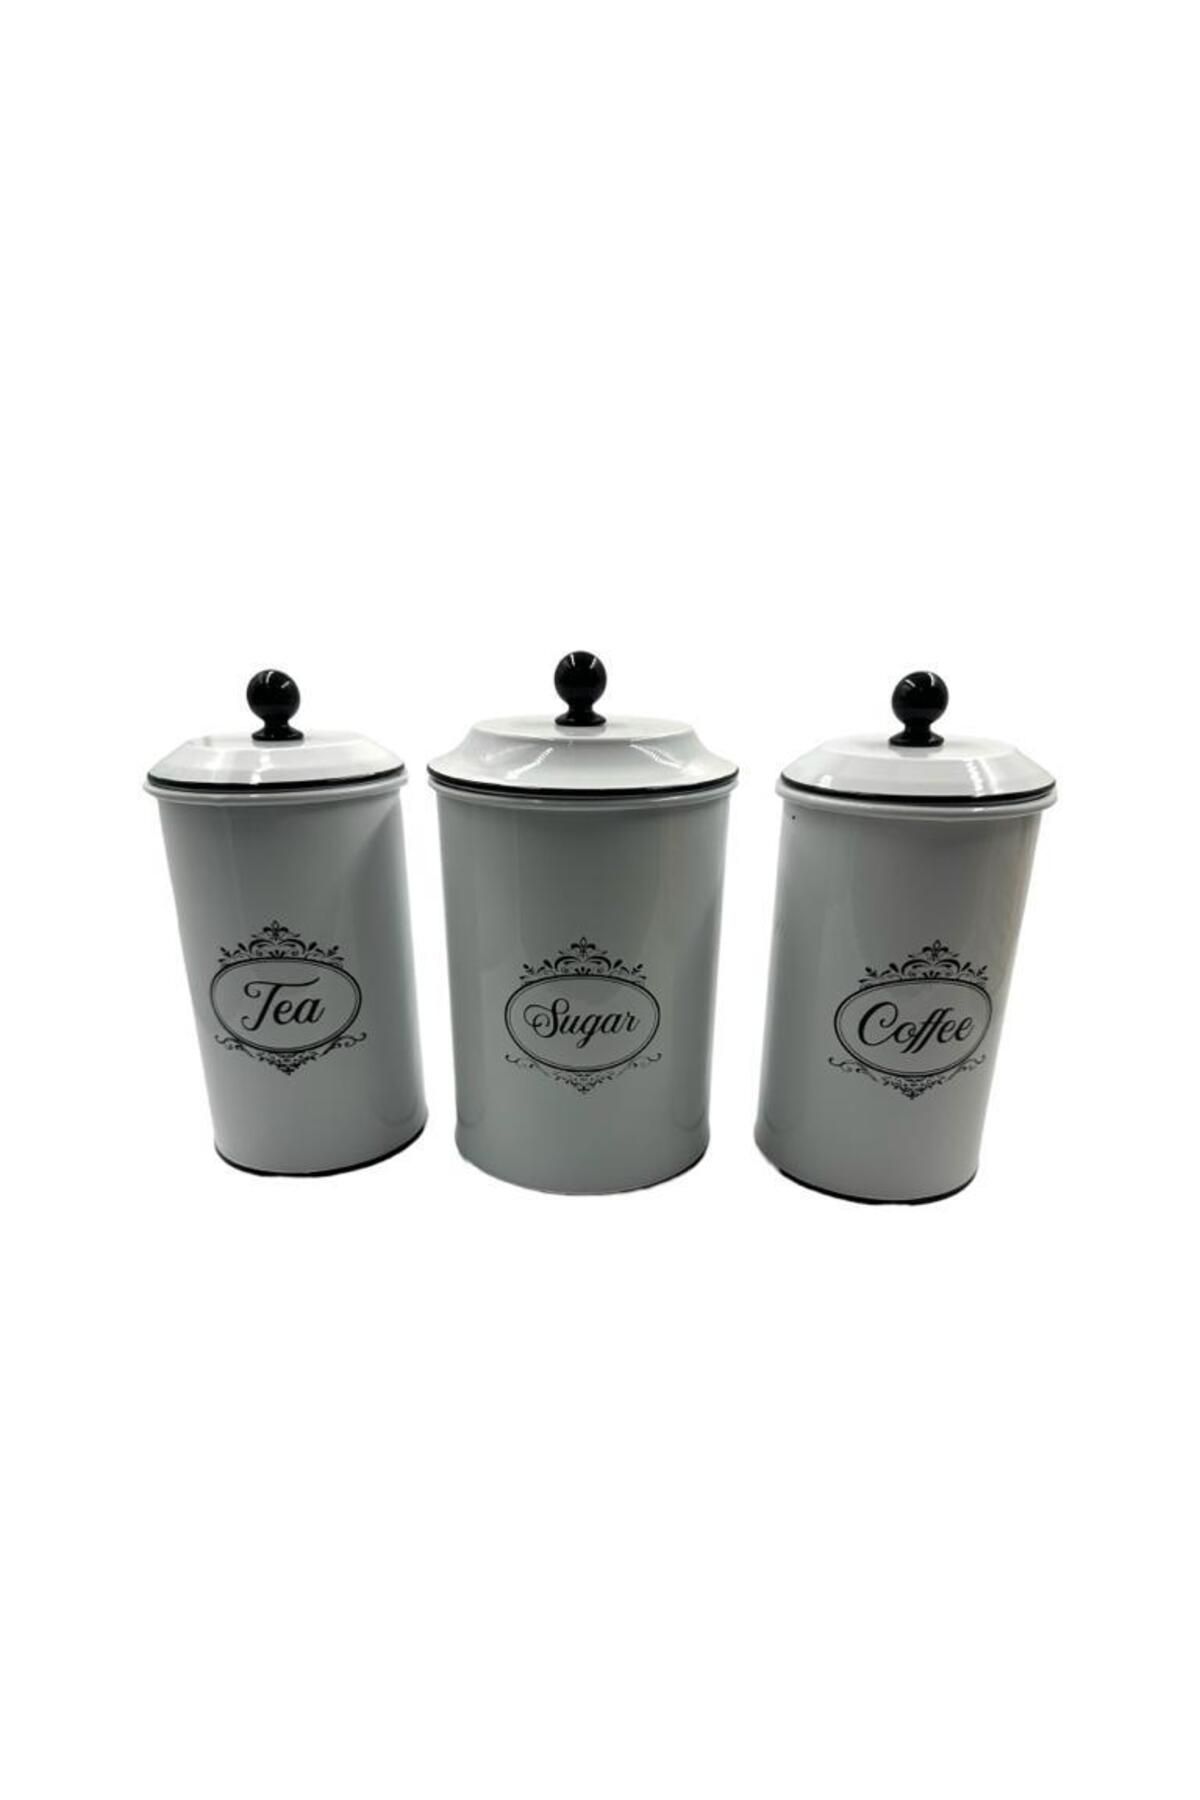 Dijital Çarşı Bolisaras Ithal Metal Çay Kahve Şeker Saklama Kabı 3'lü Set No1